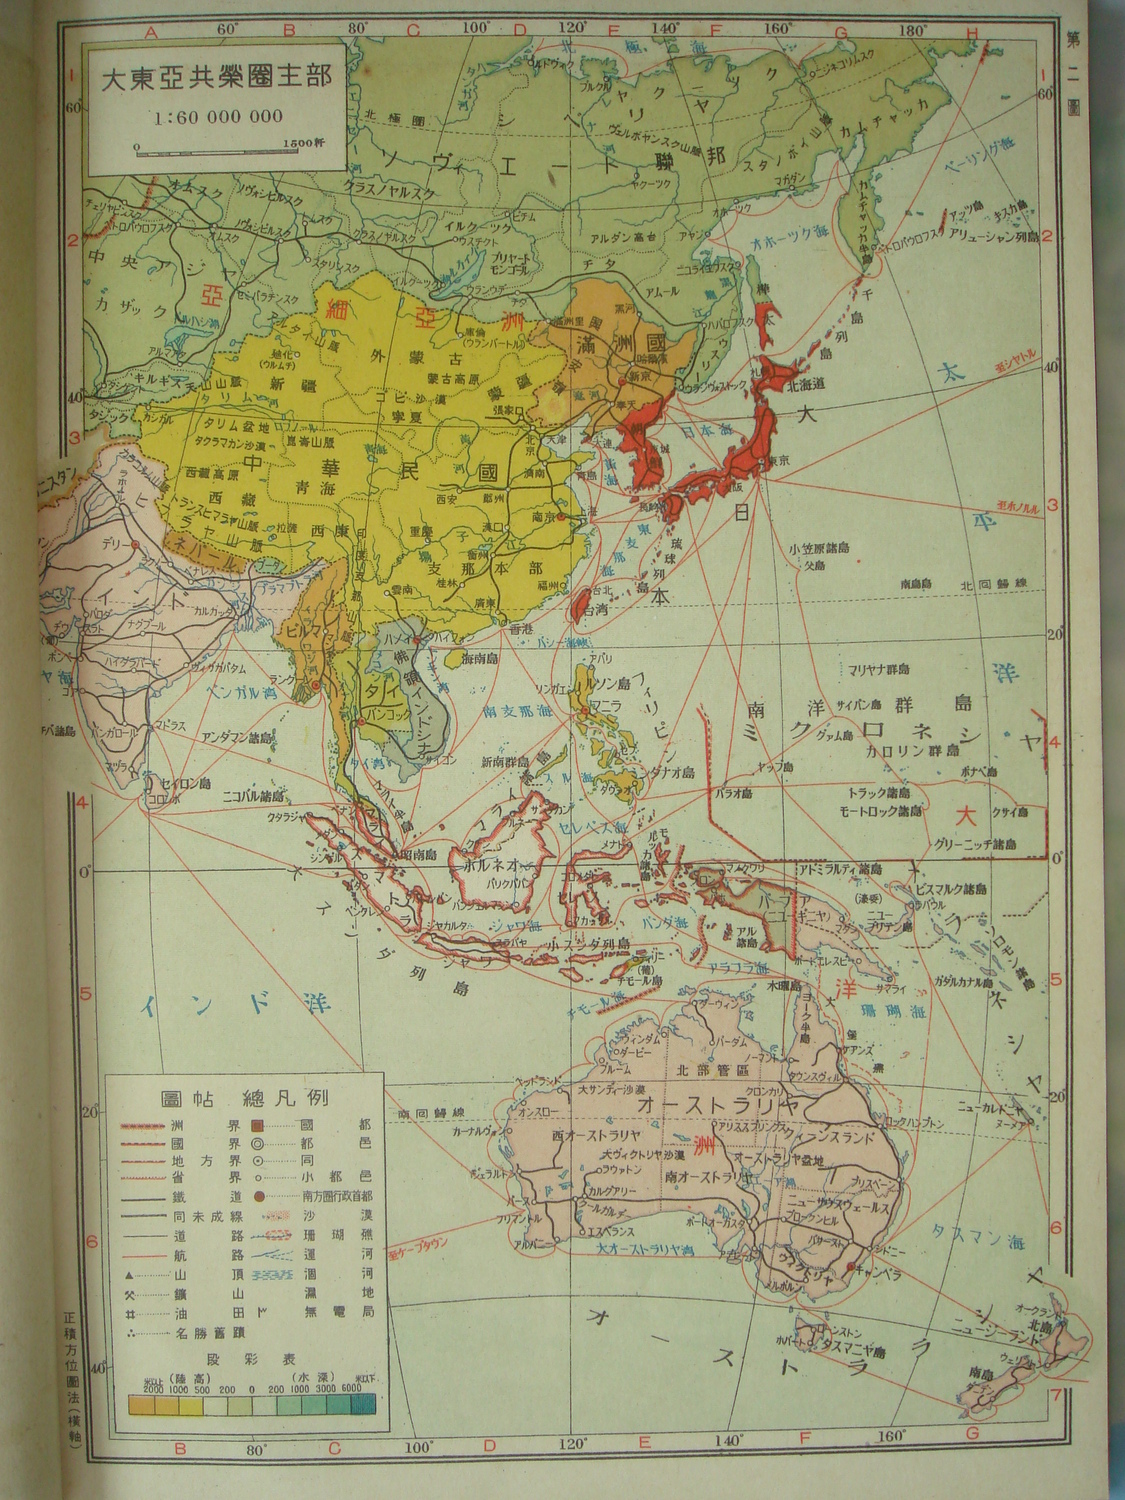 二,《大东亚共荣圈地图并地名大鉴》《大东亚共荣圈地图并地名大鉴》